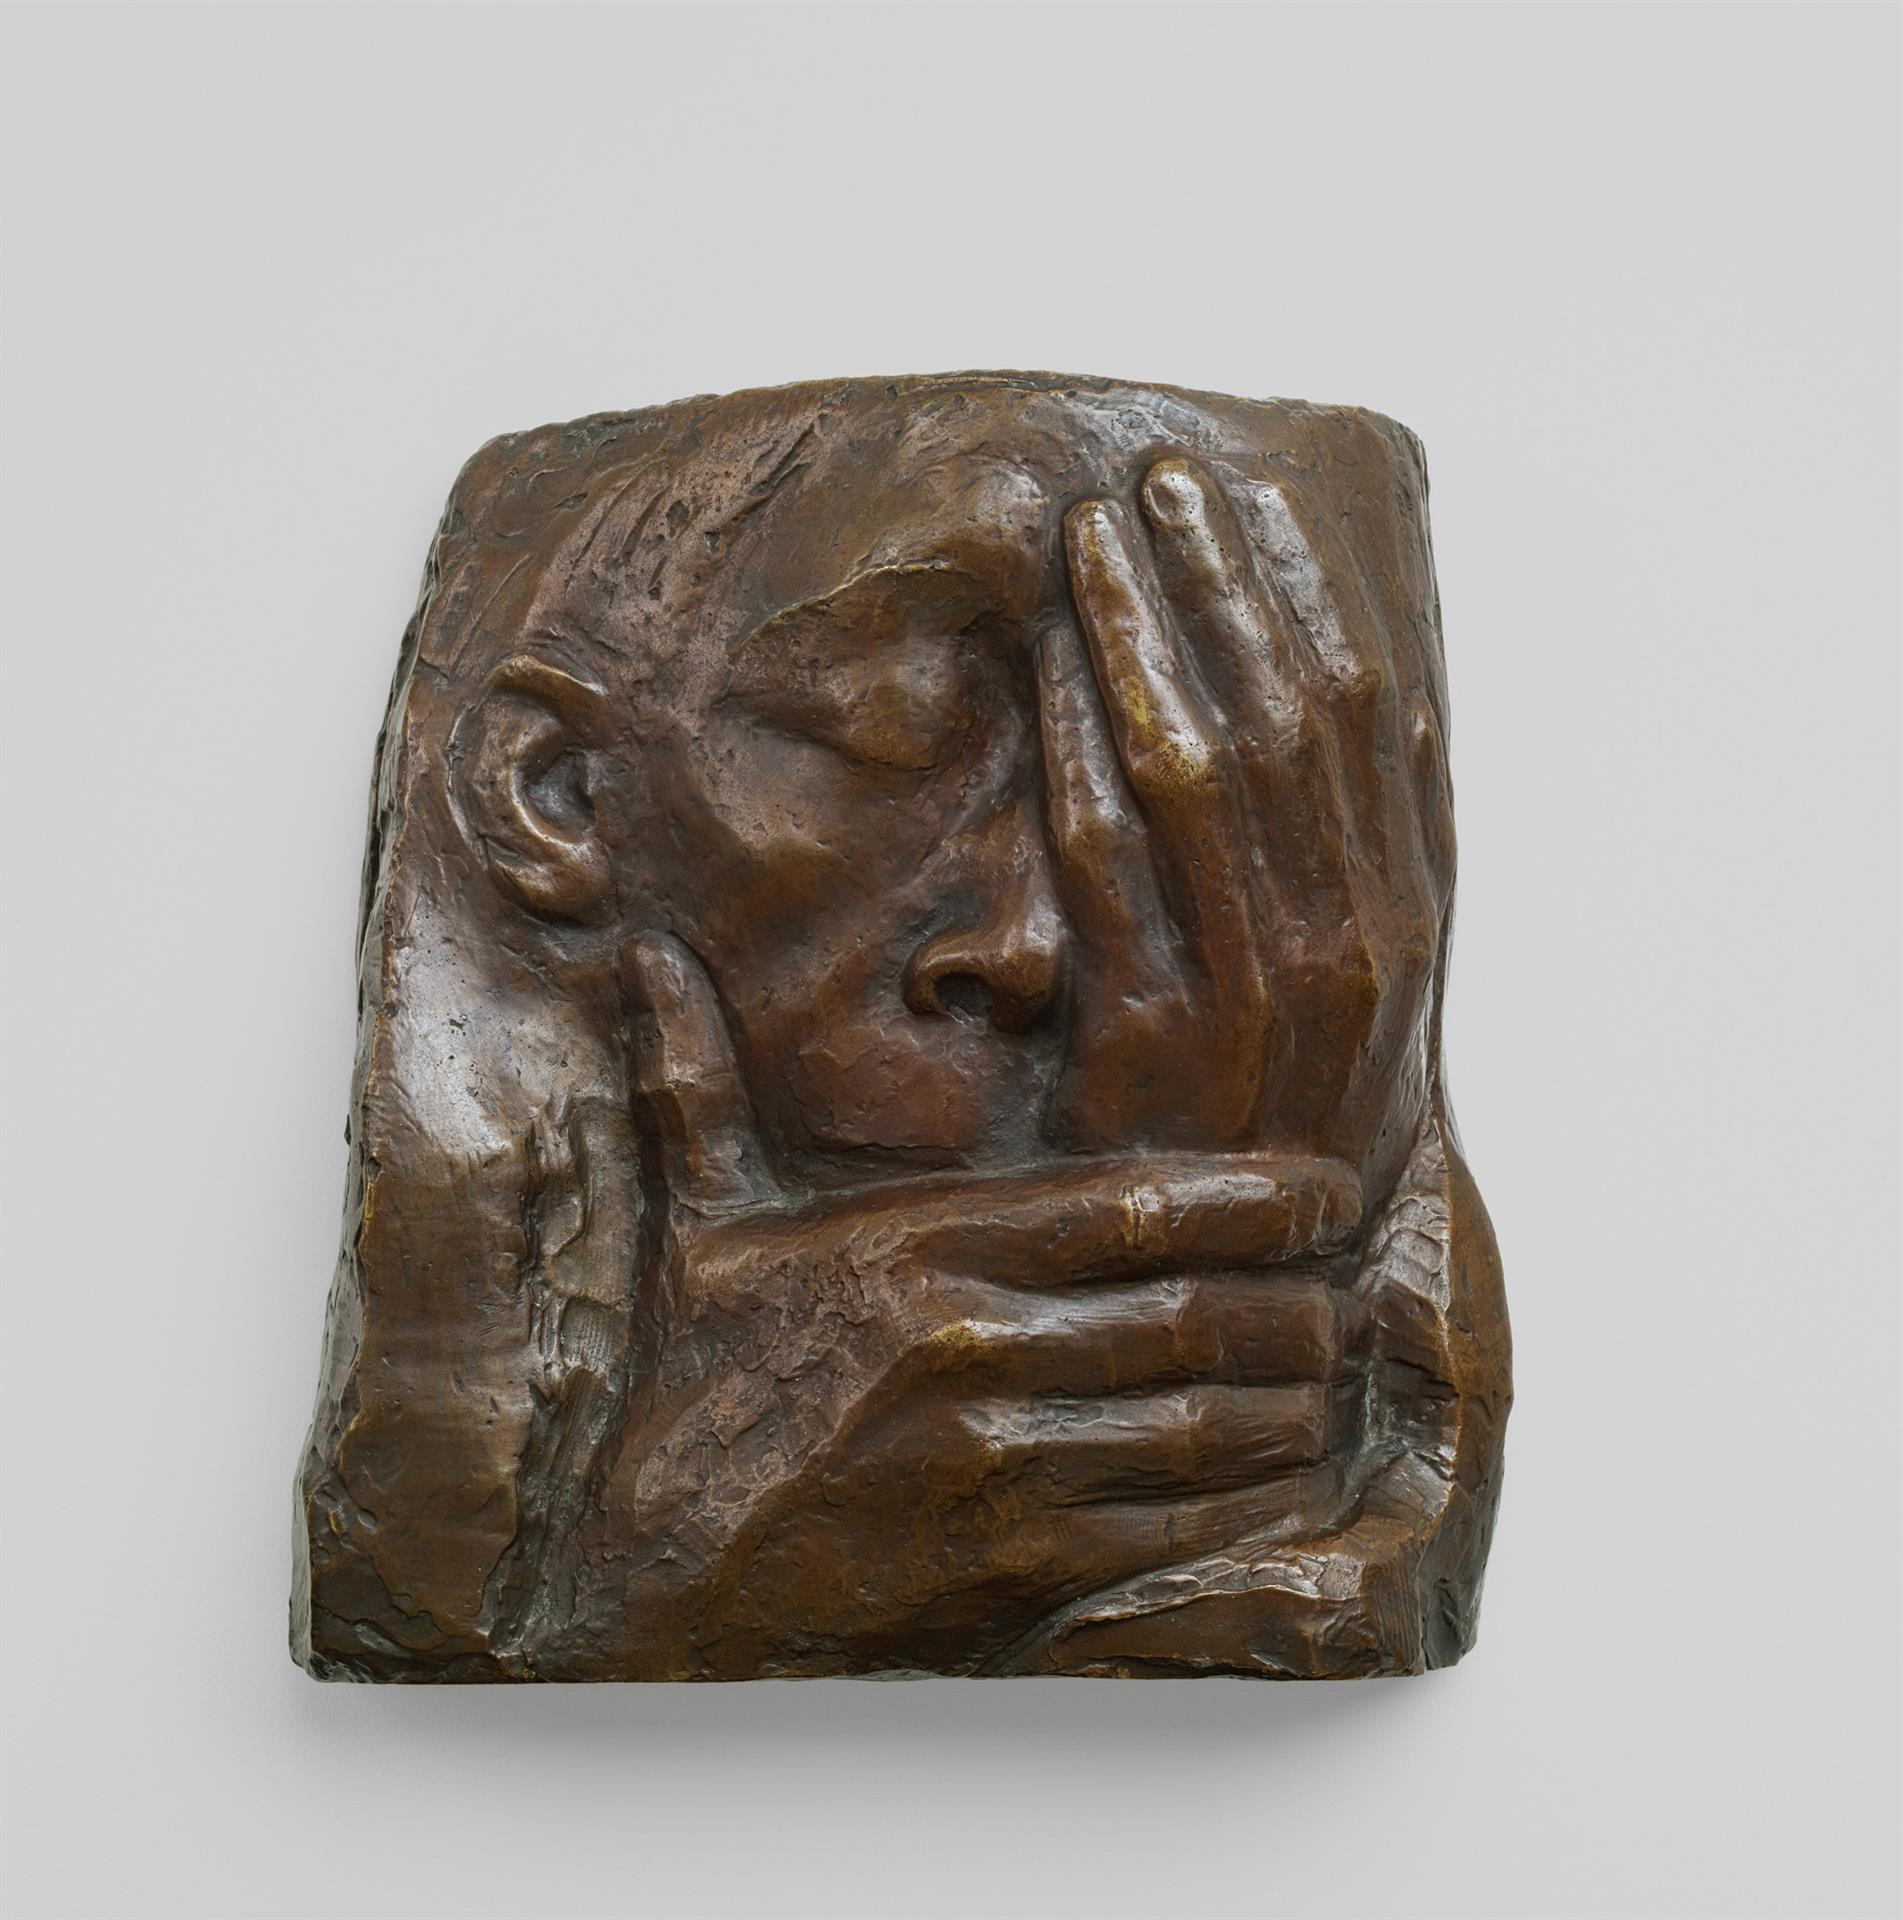 Käthe Kollwitz, Lamentation, 1938-1941, bronze, Seeler 38 I. B. 3., Collection Kollwitz de Cologne © Käthe Kollwitz Museum Köln